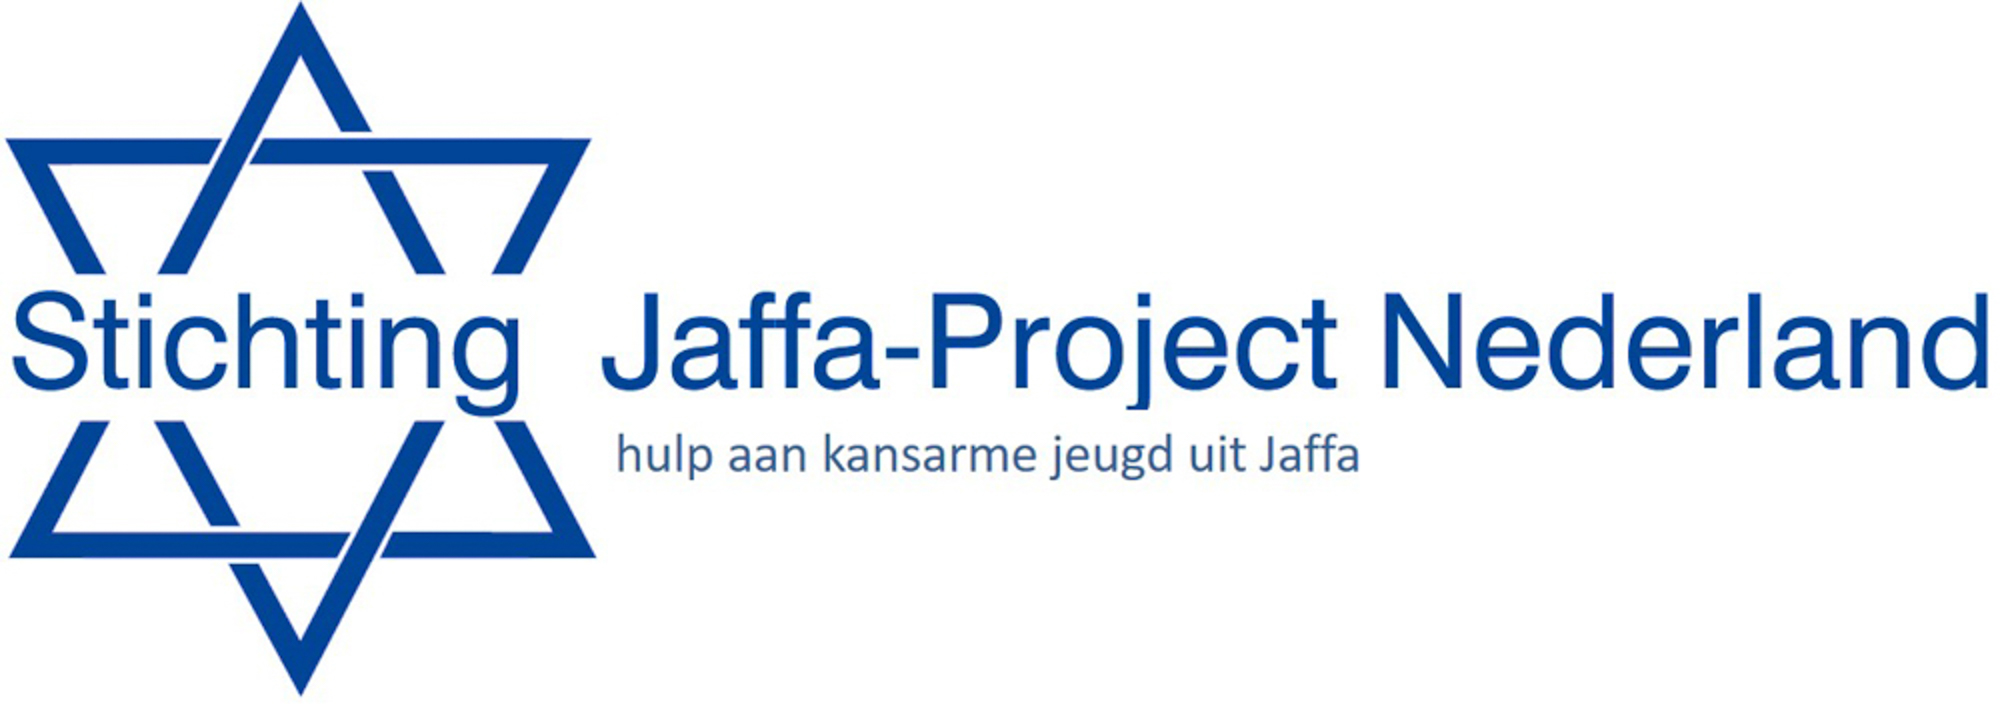 Stichting Jaffa-project Nederland